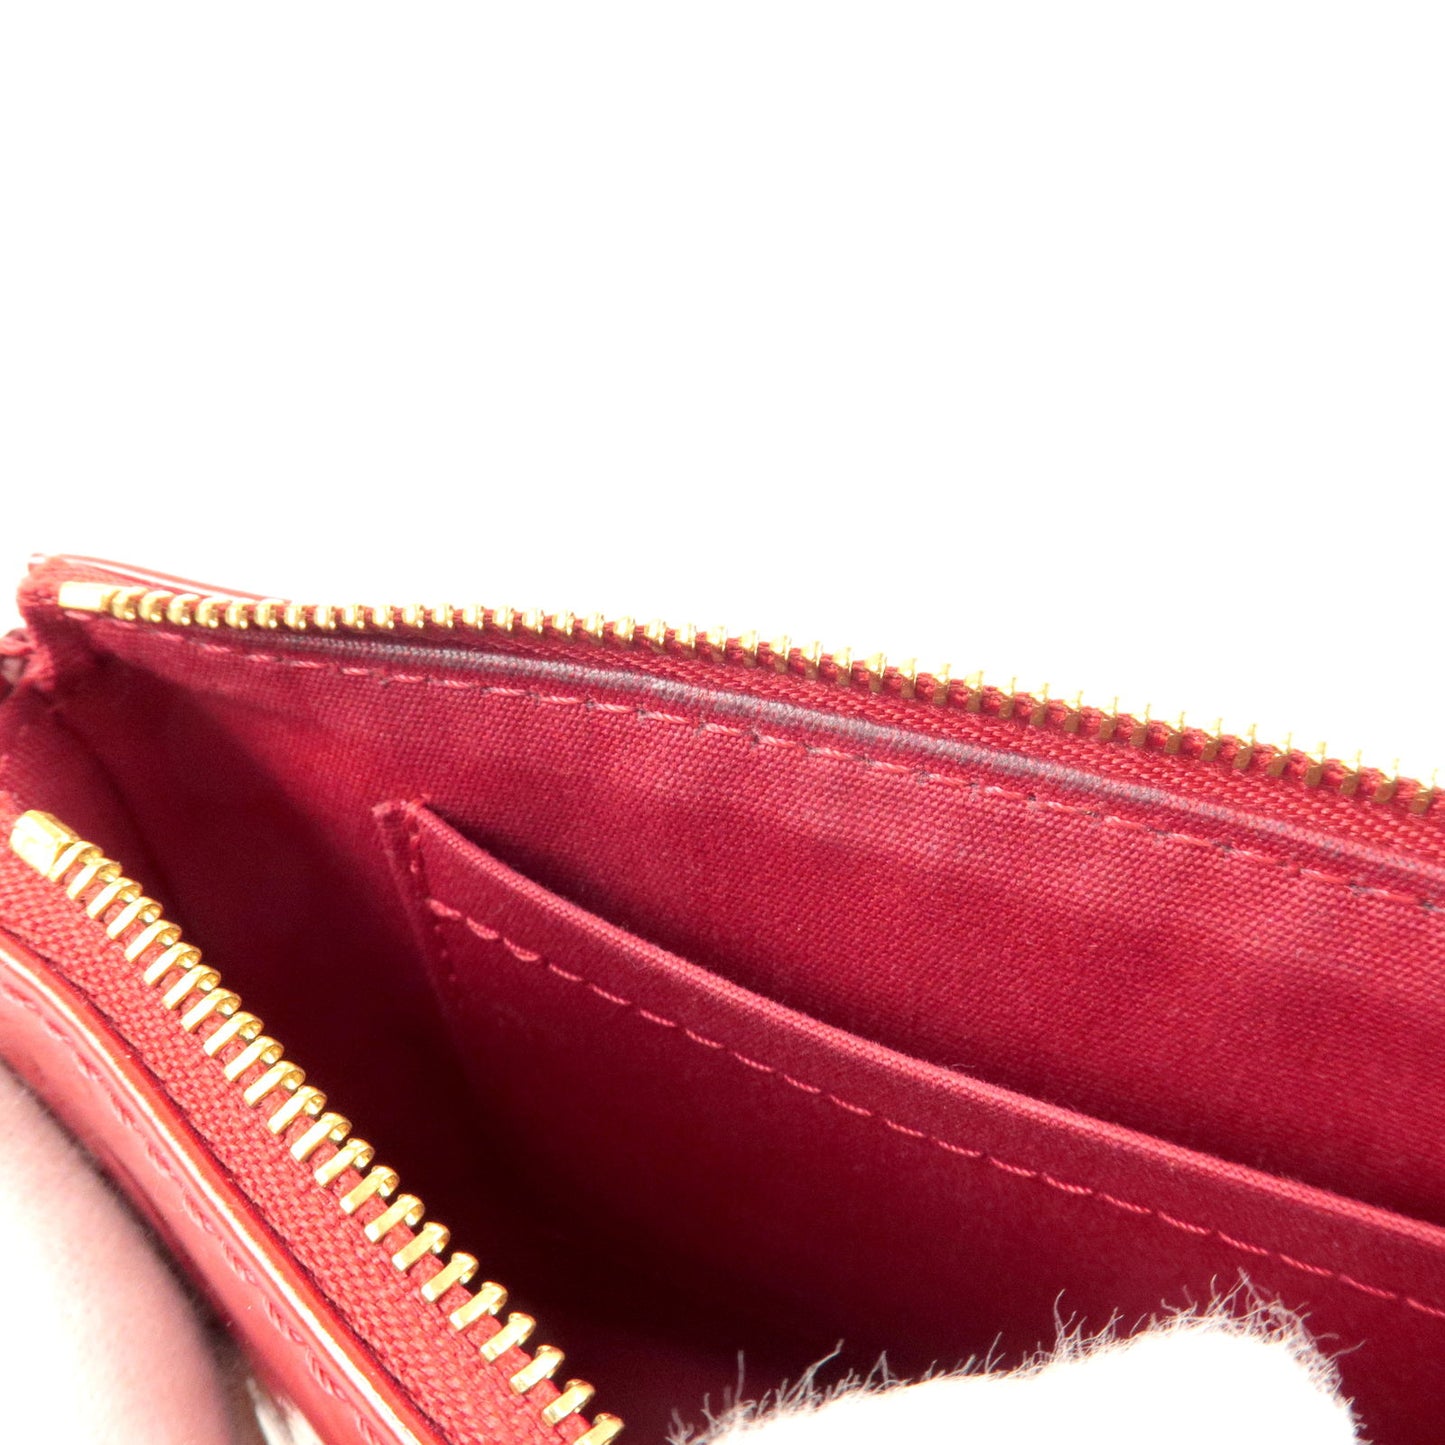 Louis-Vuitton-Monogram-Vernis-Pochette-Accessoires-Red-M91577